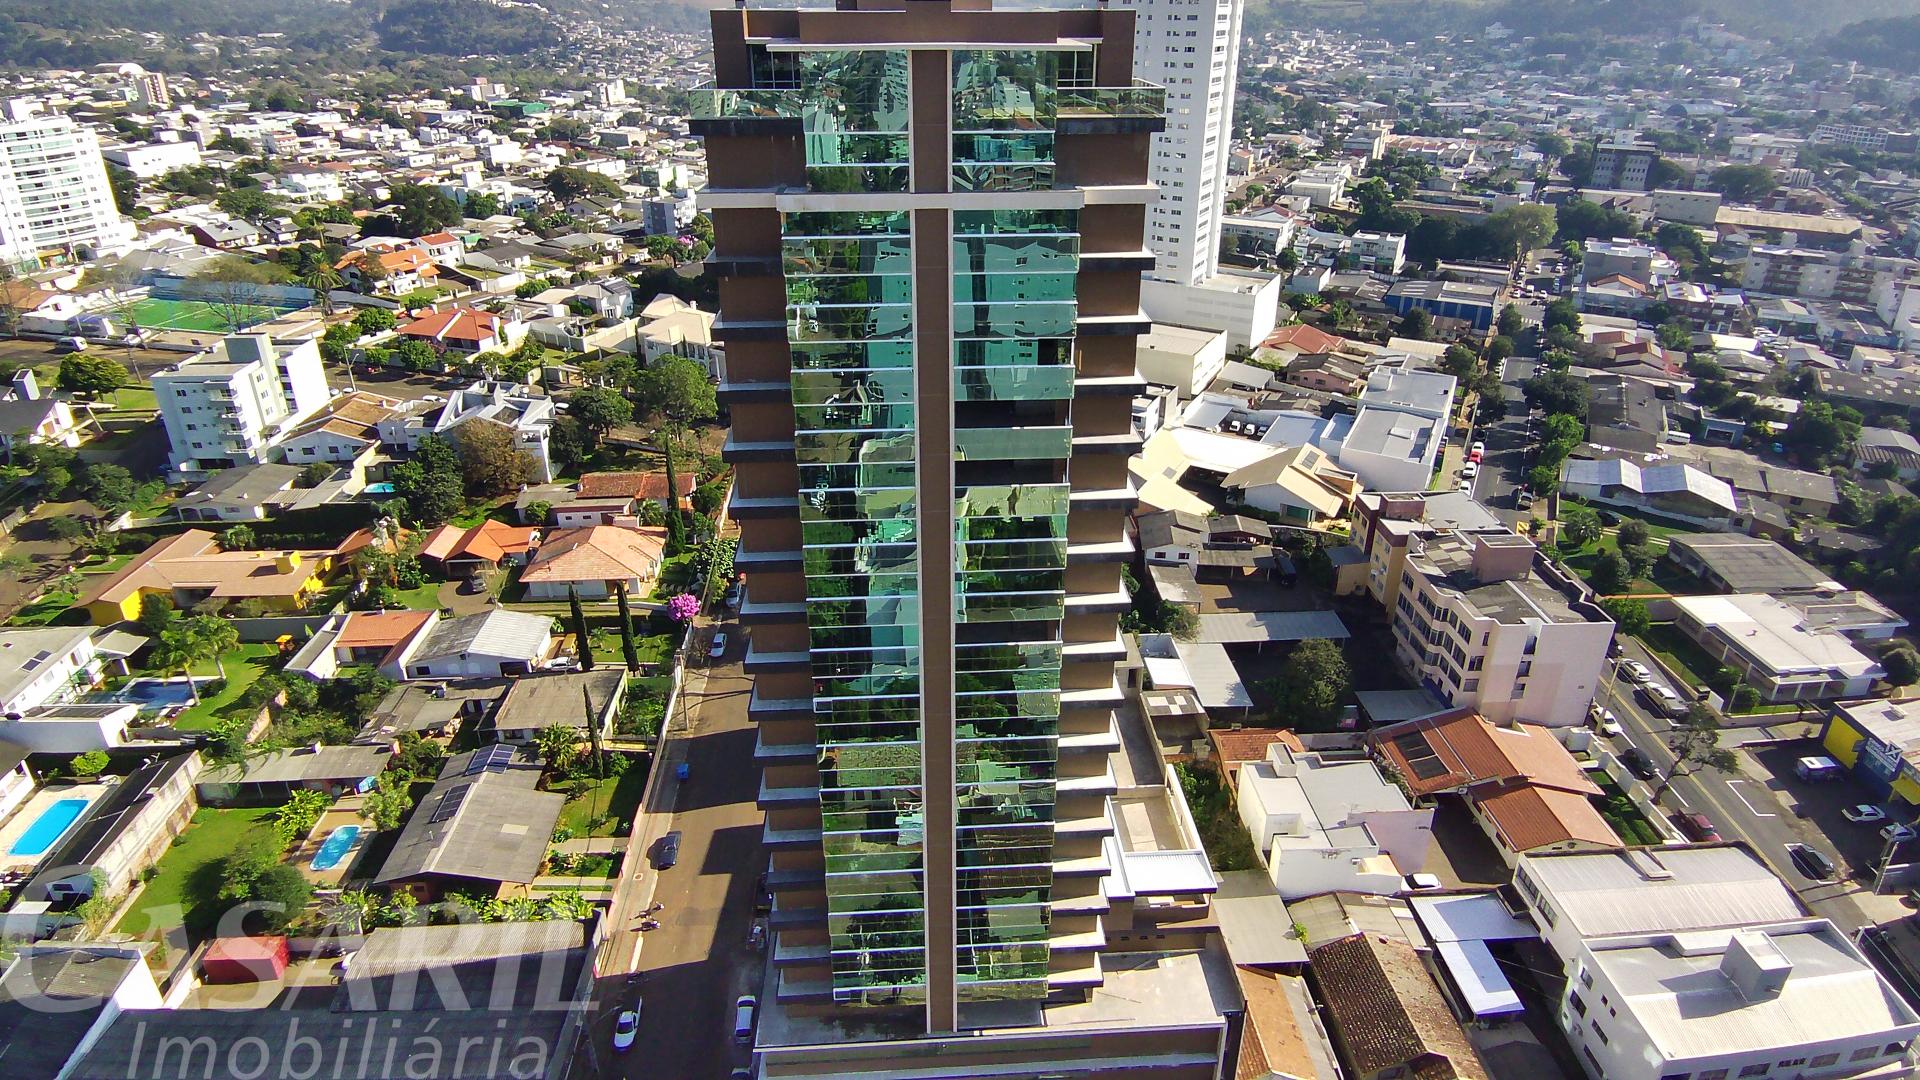 Investimento  Apartamento À Venda No Centro De Francisco Beltrão - Pr